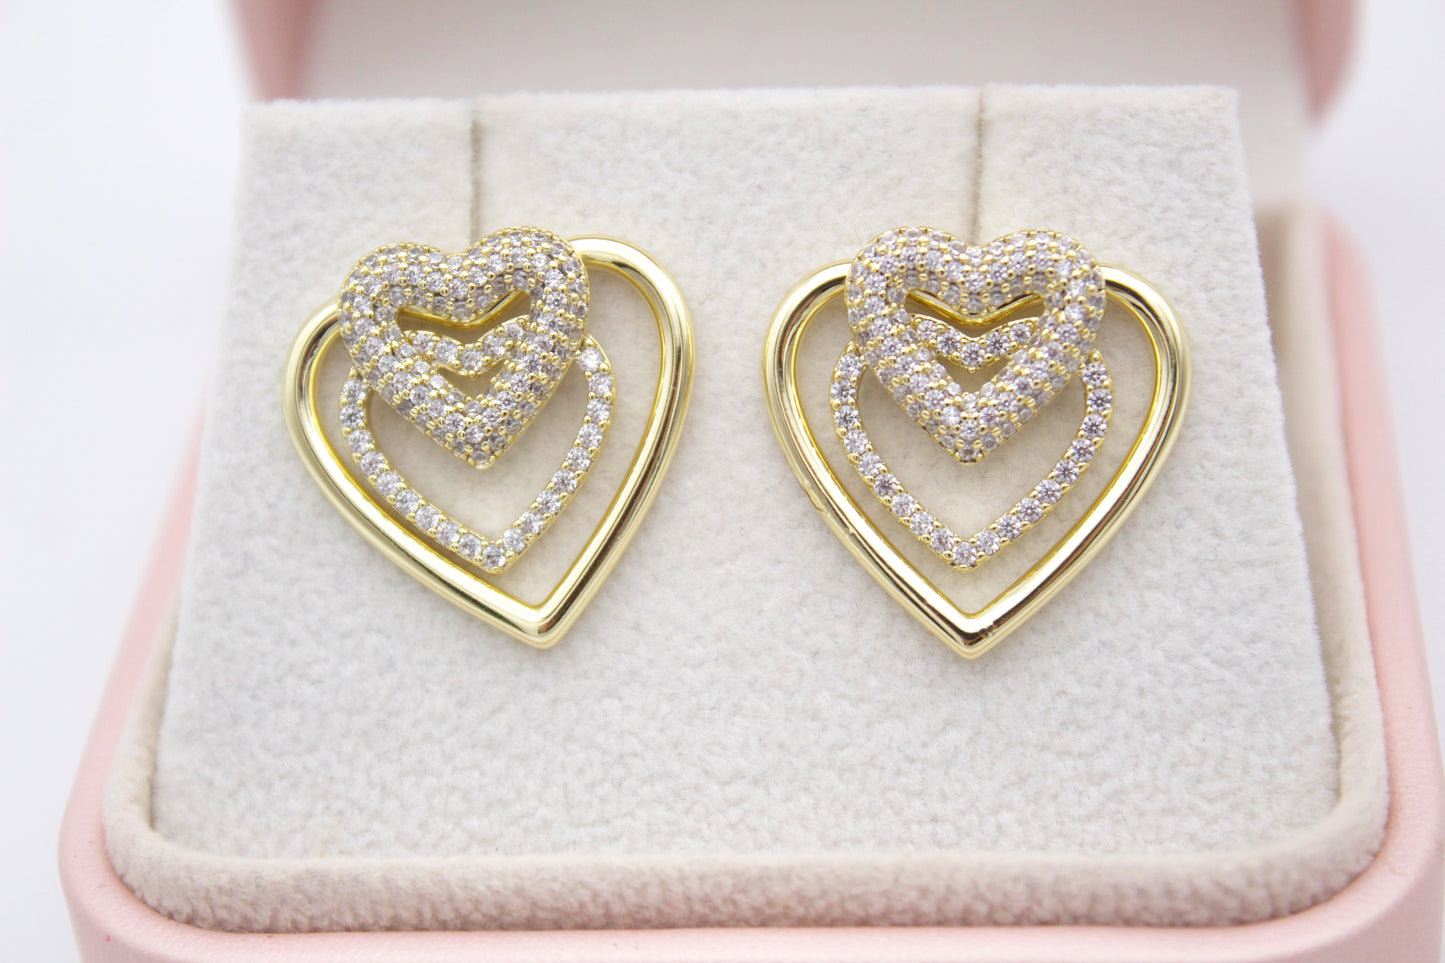 Antella Heart Stud Earrings